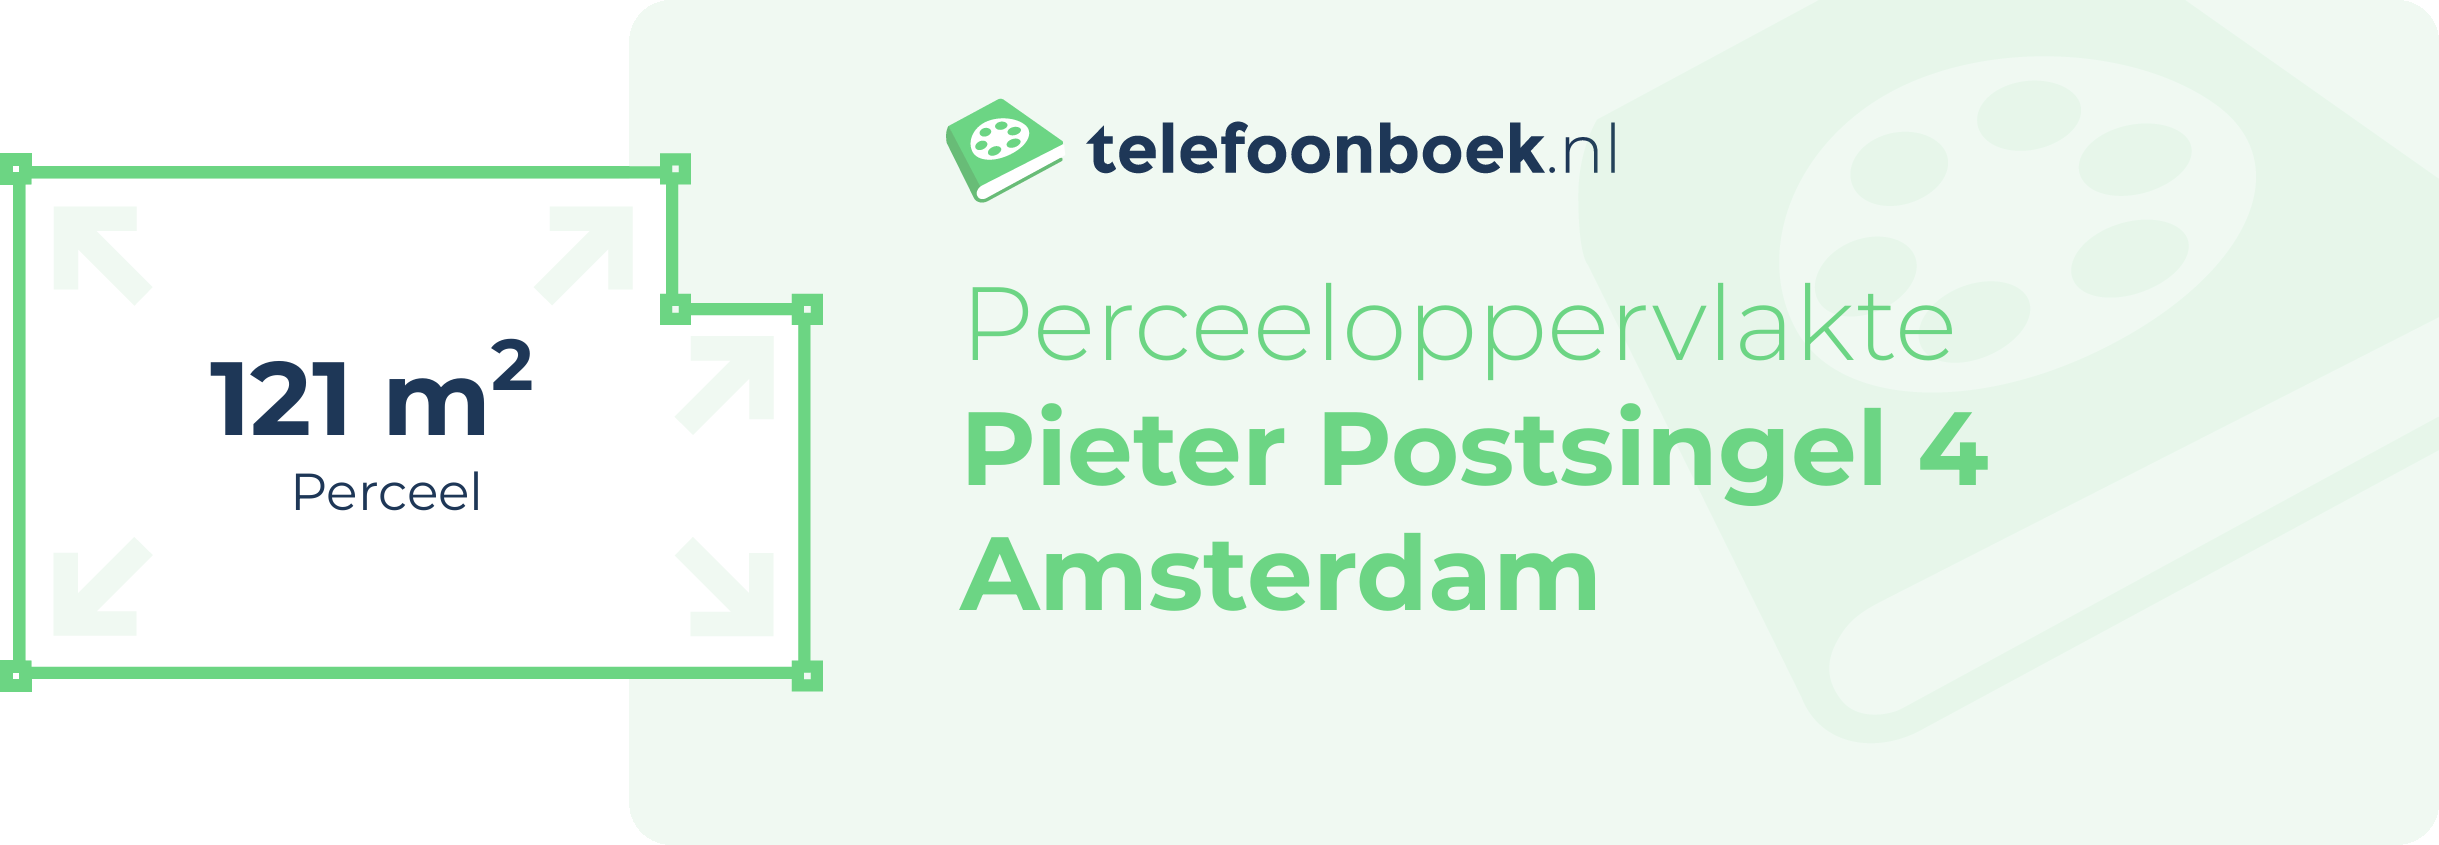 Perceeloppervlakte Pieter Postsingel 4 Amsterdam